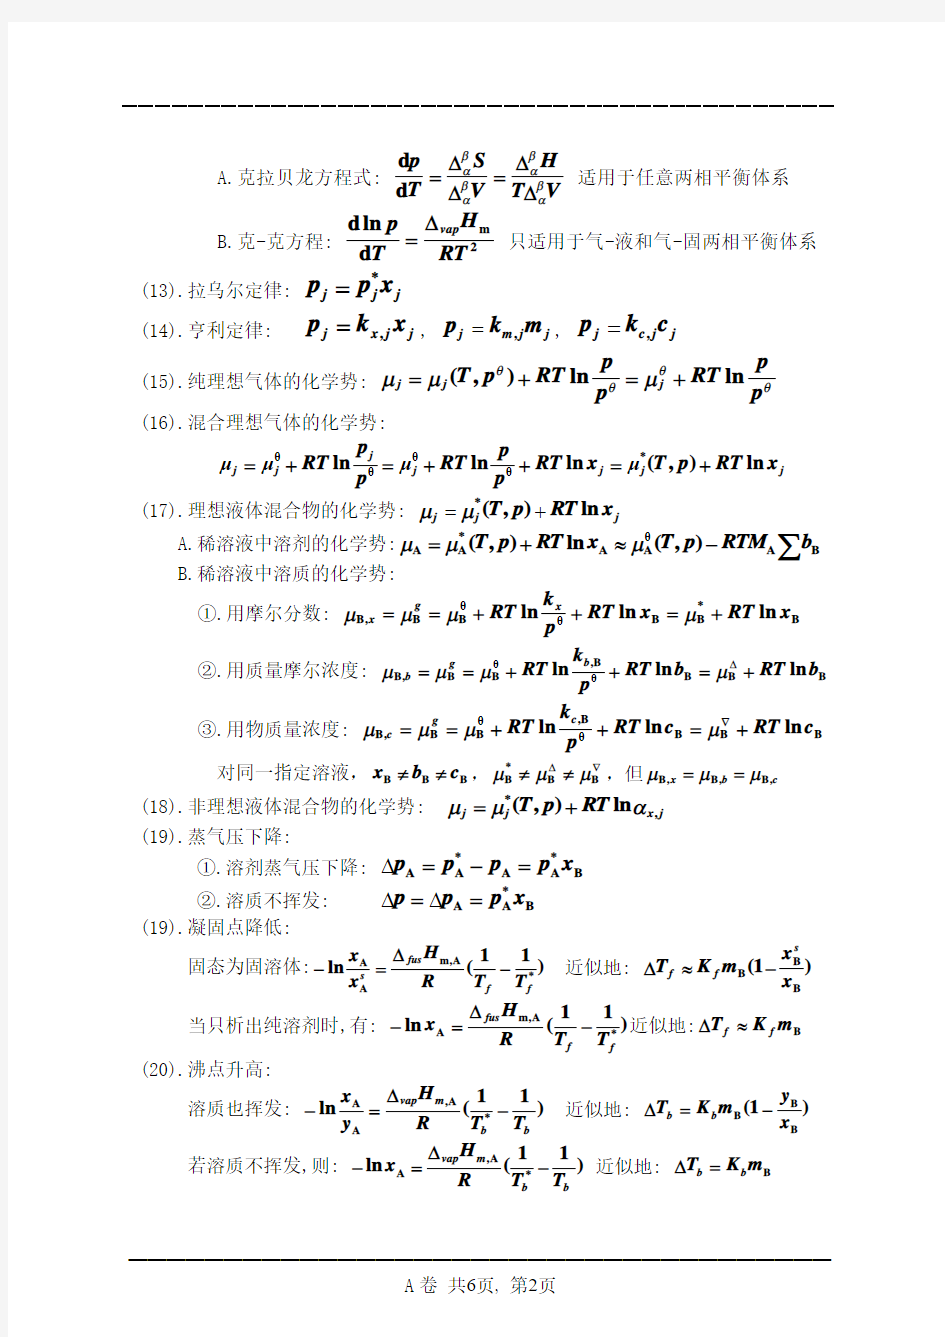 《物理化学》上册_重要公式概念_化学平衡例题